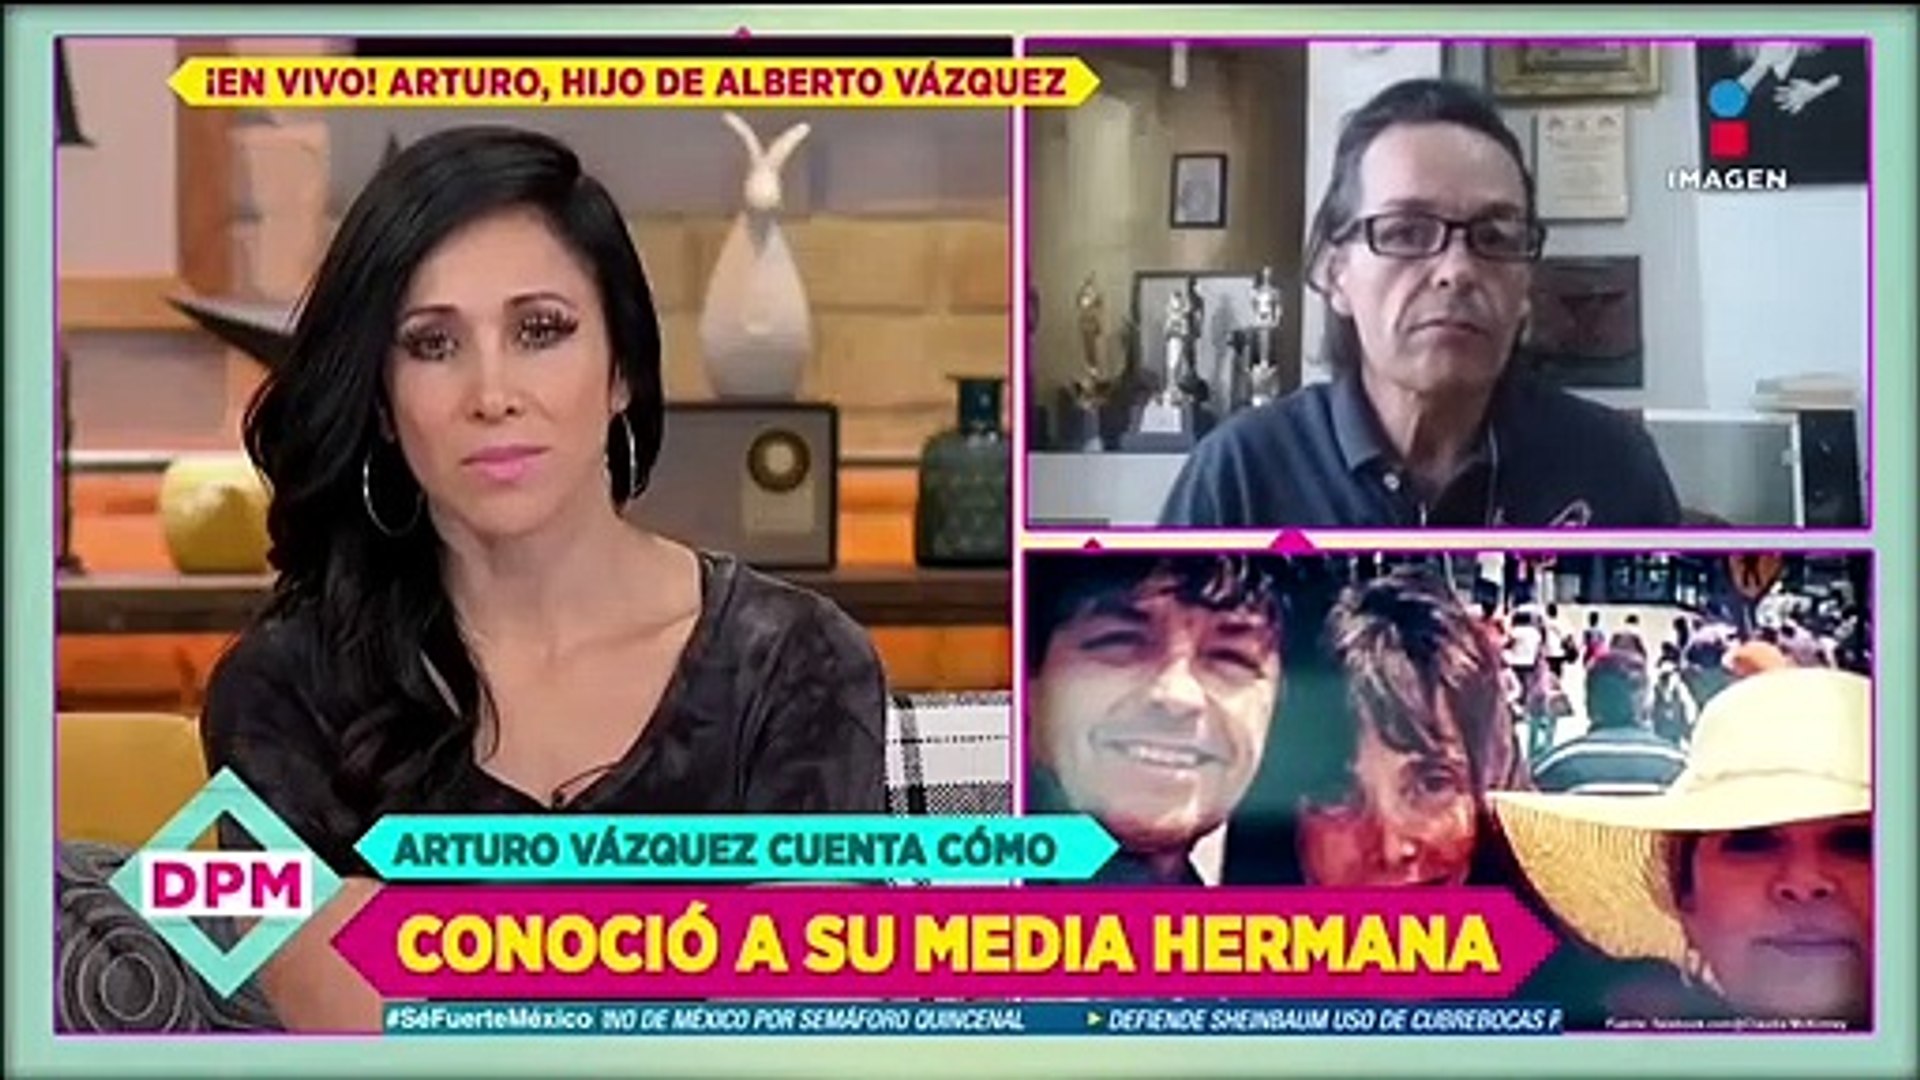 Aparece una nueva hija de Alberto Vázquez? Su hijo Arturo lo aclara - Vidéo  Dailymotion